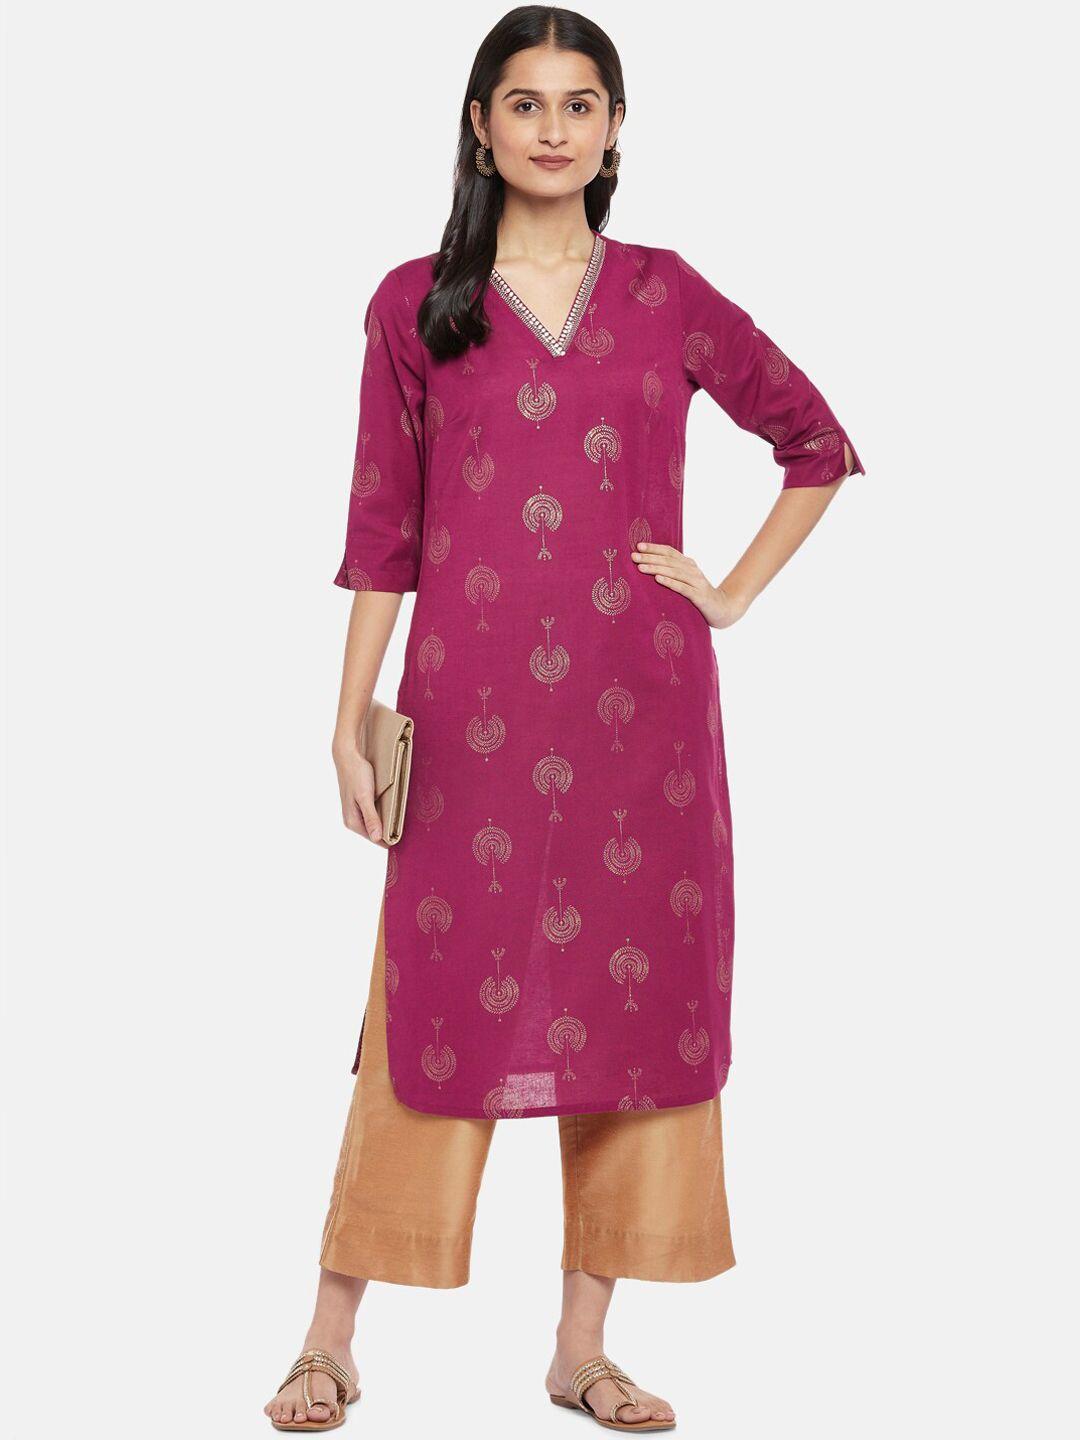 rangmanch by pantaloons women pink ethnic motifs embellished kurta